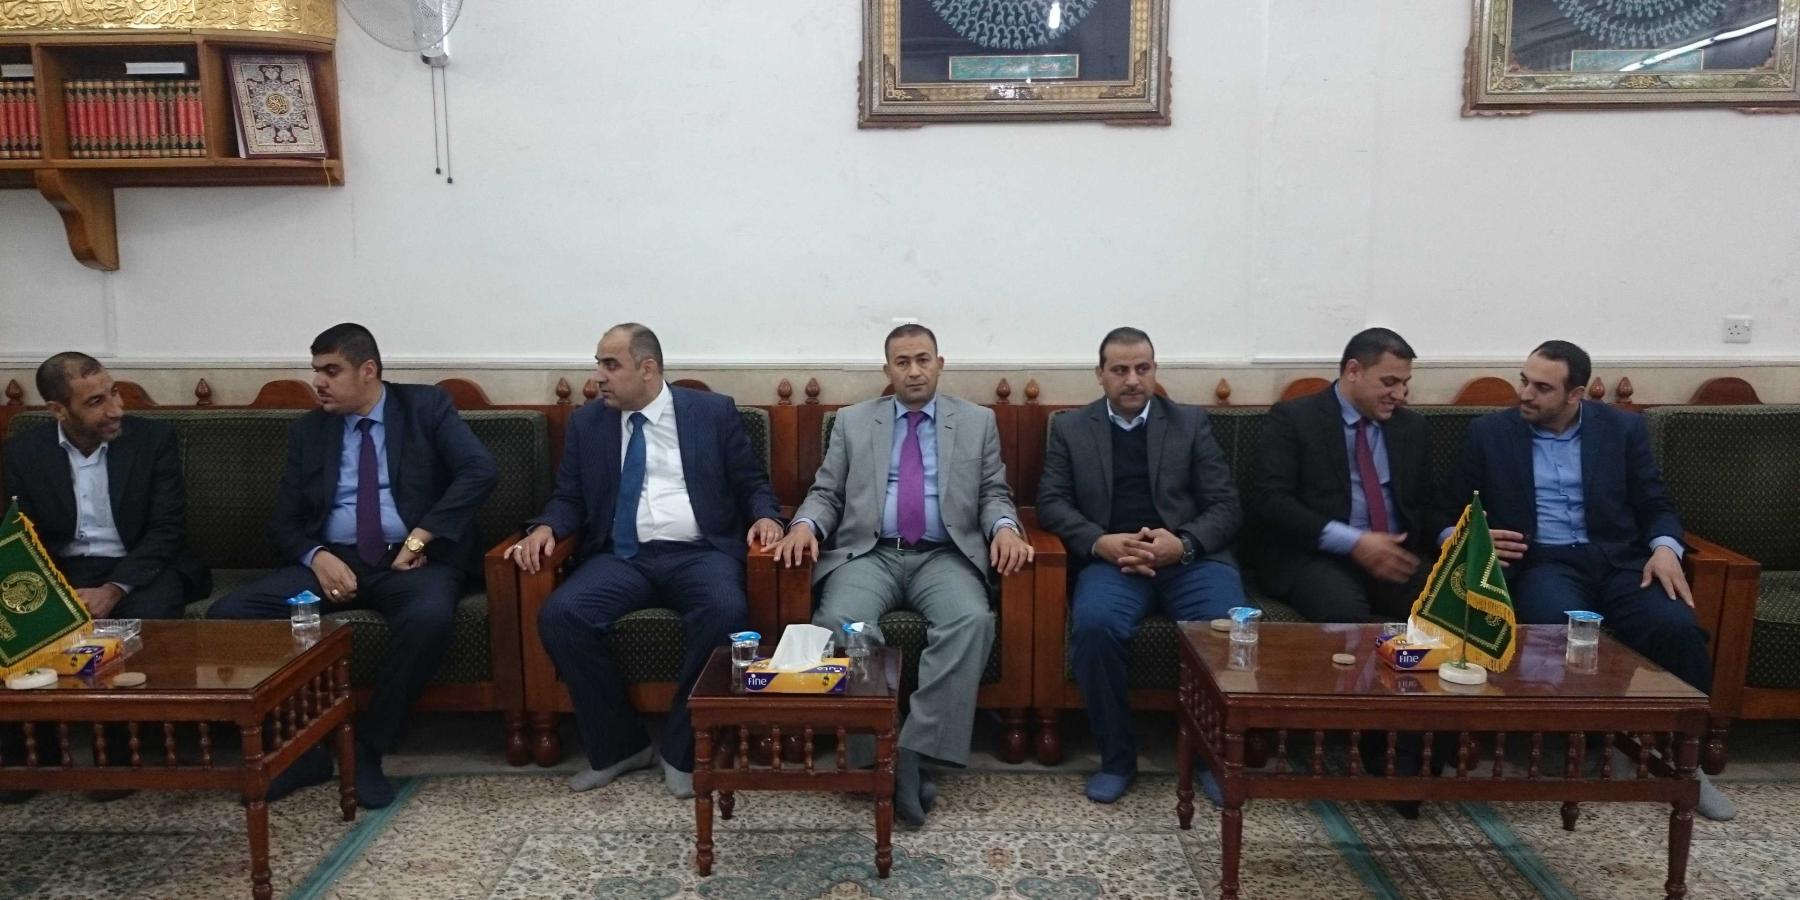 وفد من مجلس محافظة نينوى يتشرف بزيارة العتبة العلوية المقدسة